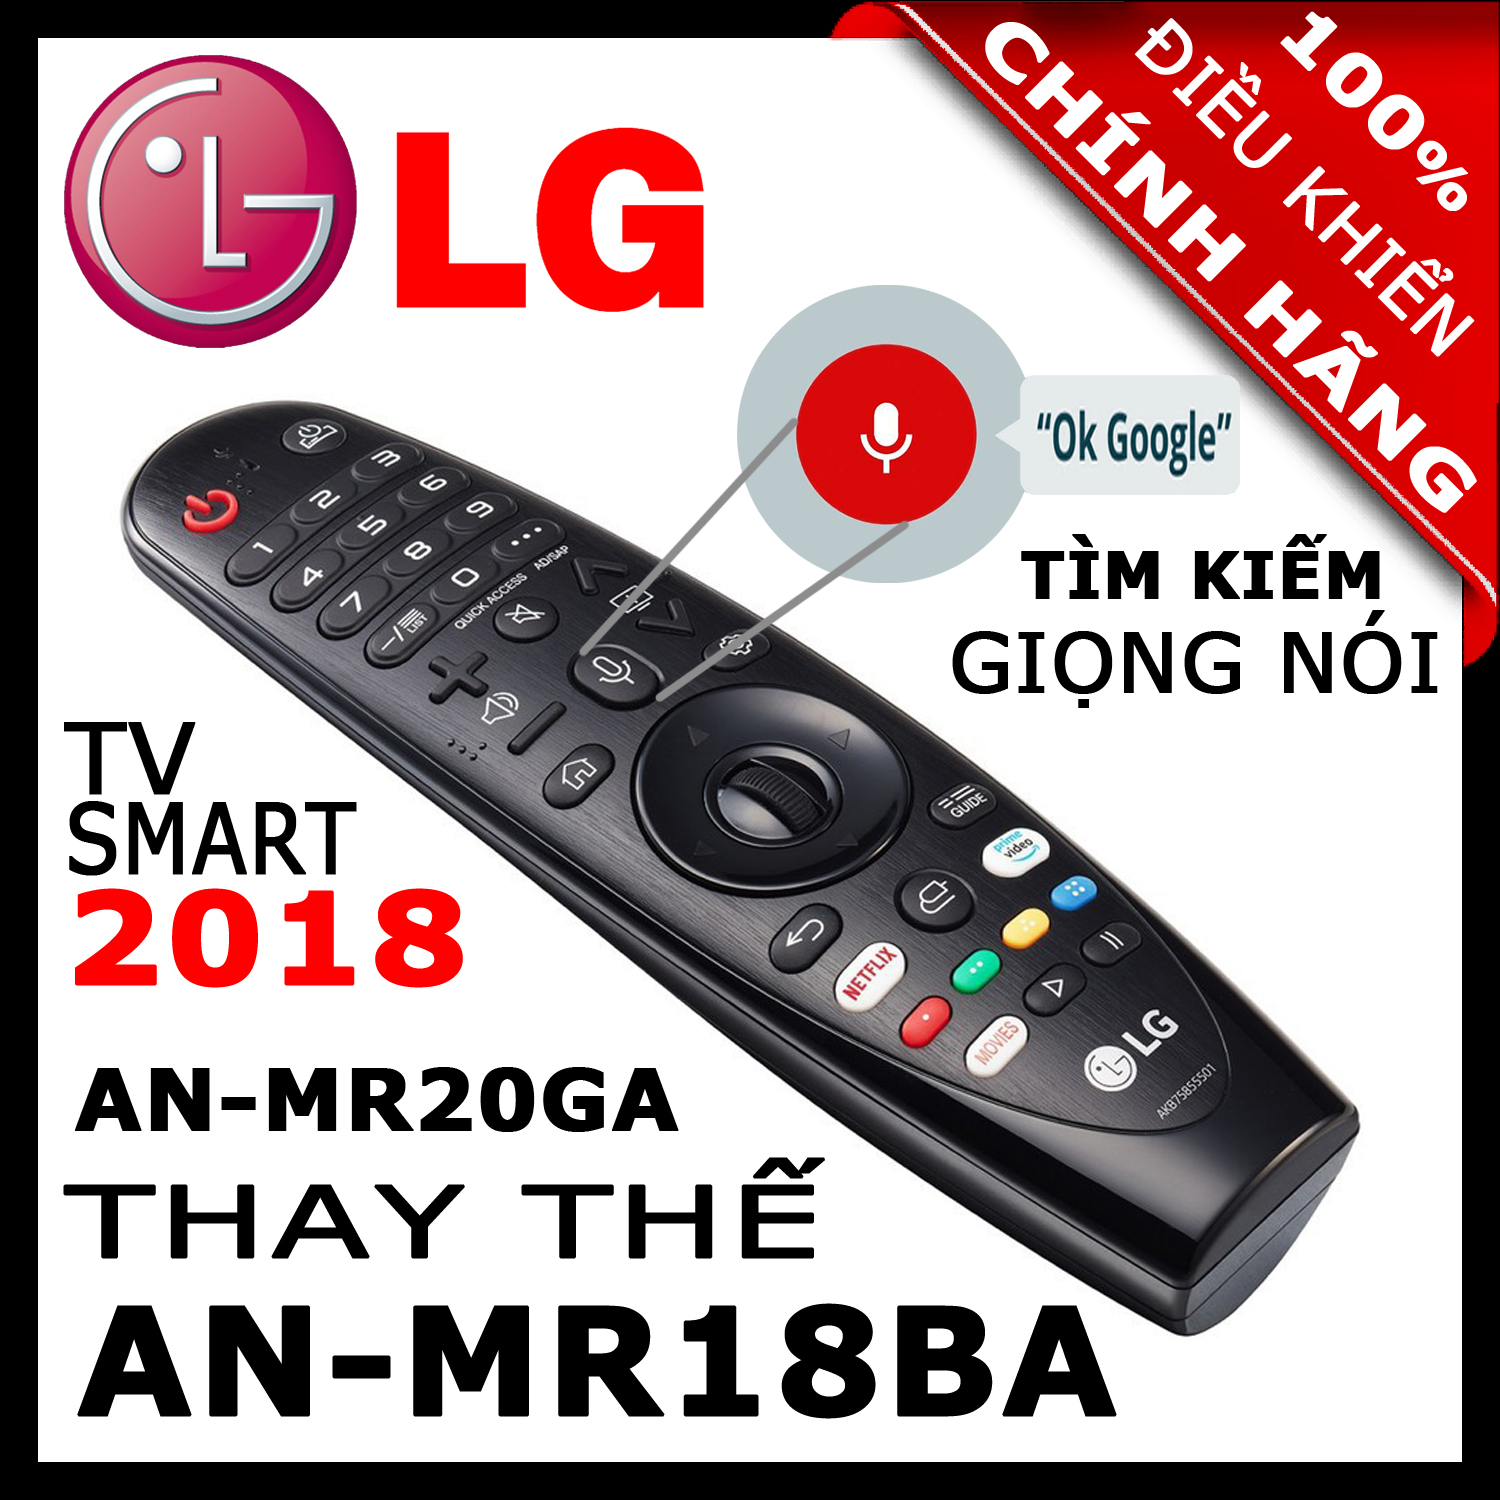 ĐIỀU KHIỂN Remote Tivi LG MR20GA thay thế MR19BA và MR18BA và MR650A có Giọng nói Chuột bay cho tivi LG 2020, 2019, 2018, 2017 Magic Remote AN-MR20GA mã số AKB75855501 HÀNG XỊN. Remote cho tivi LG sản xuất năm 2018